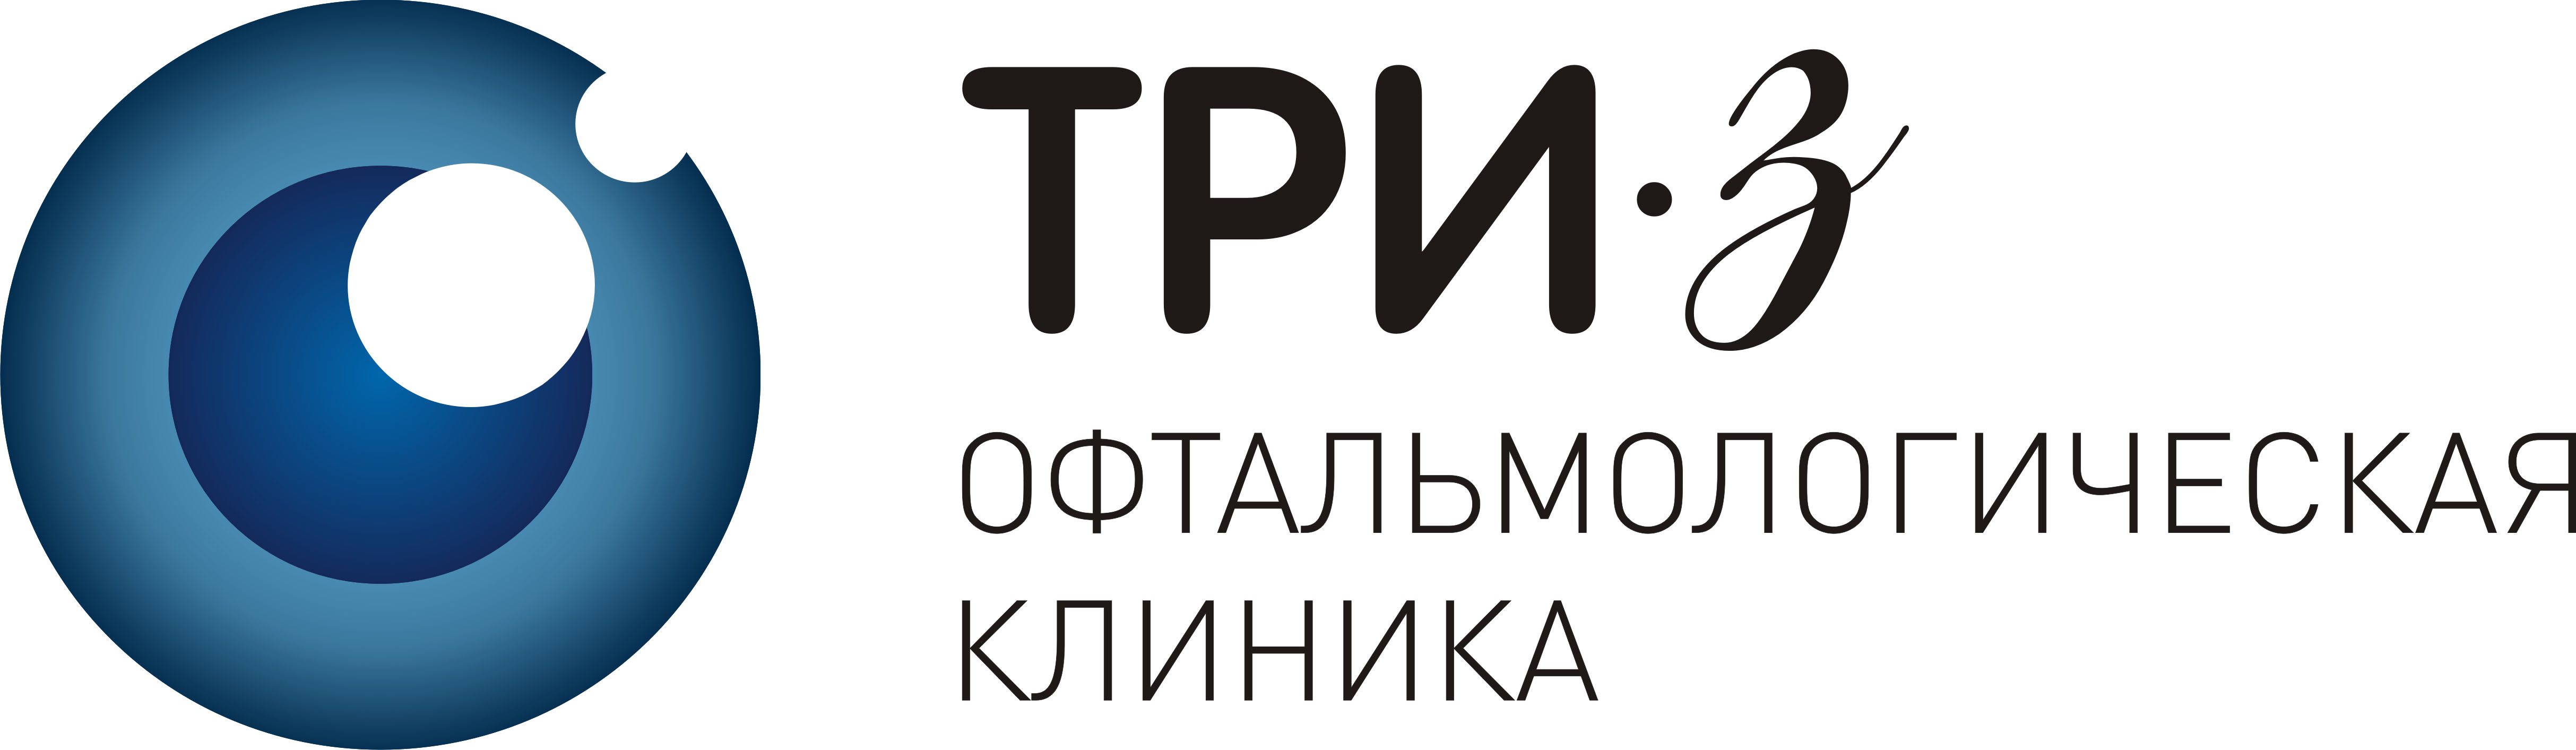 Екатерининская 105 офтальмология. Логотип клиники 3з. Клиника три з. Три з логотип. Клиника три з Краснодар.